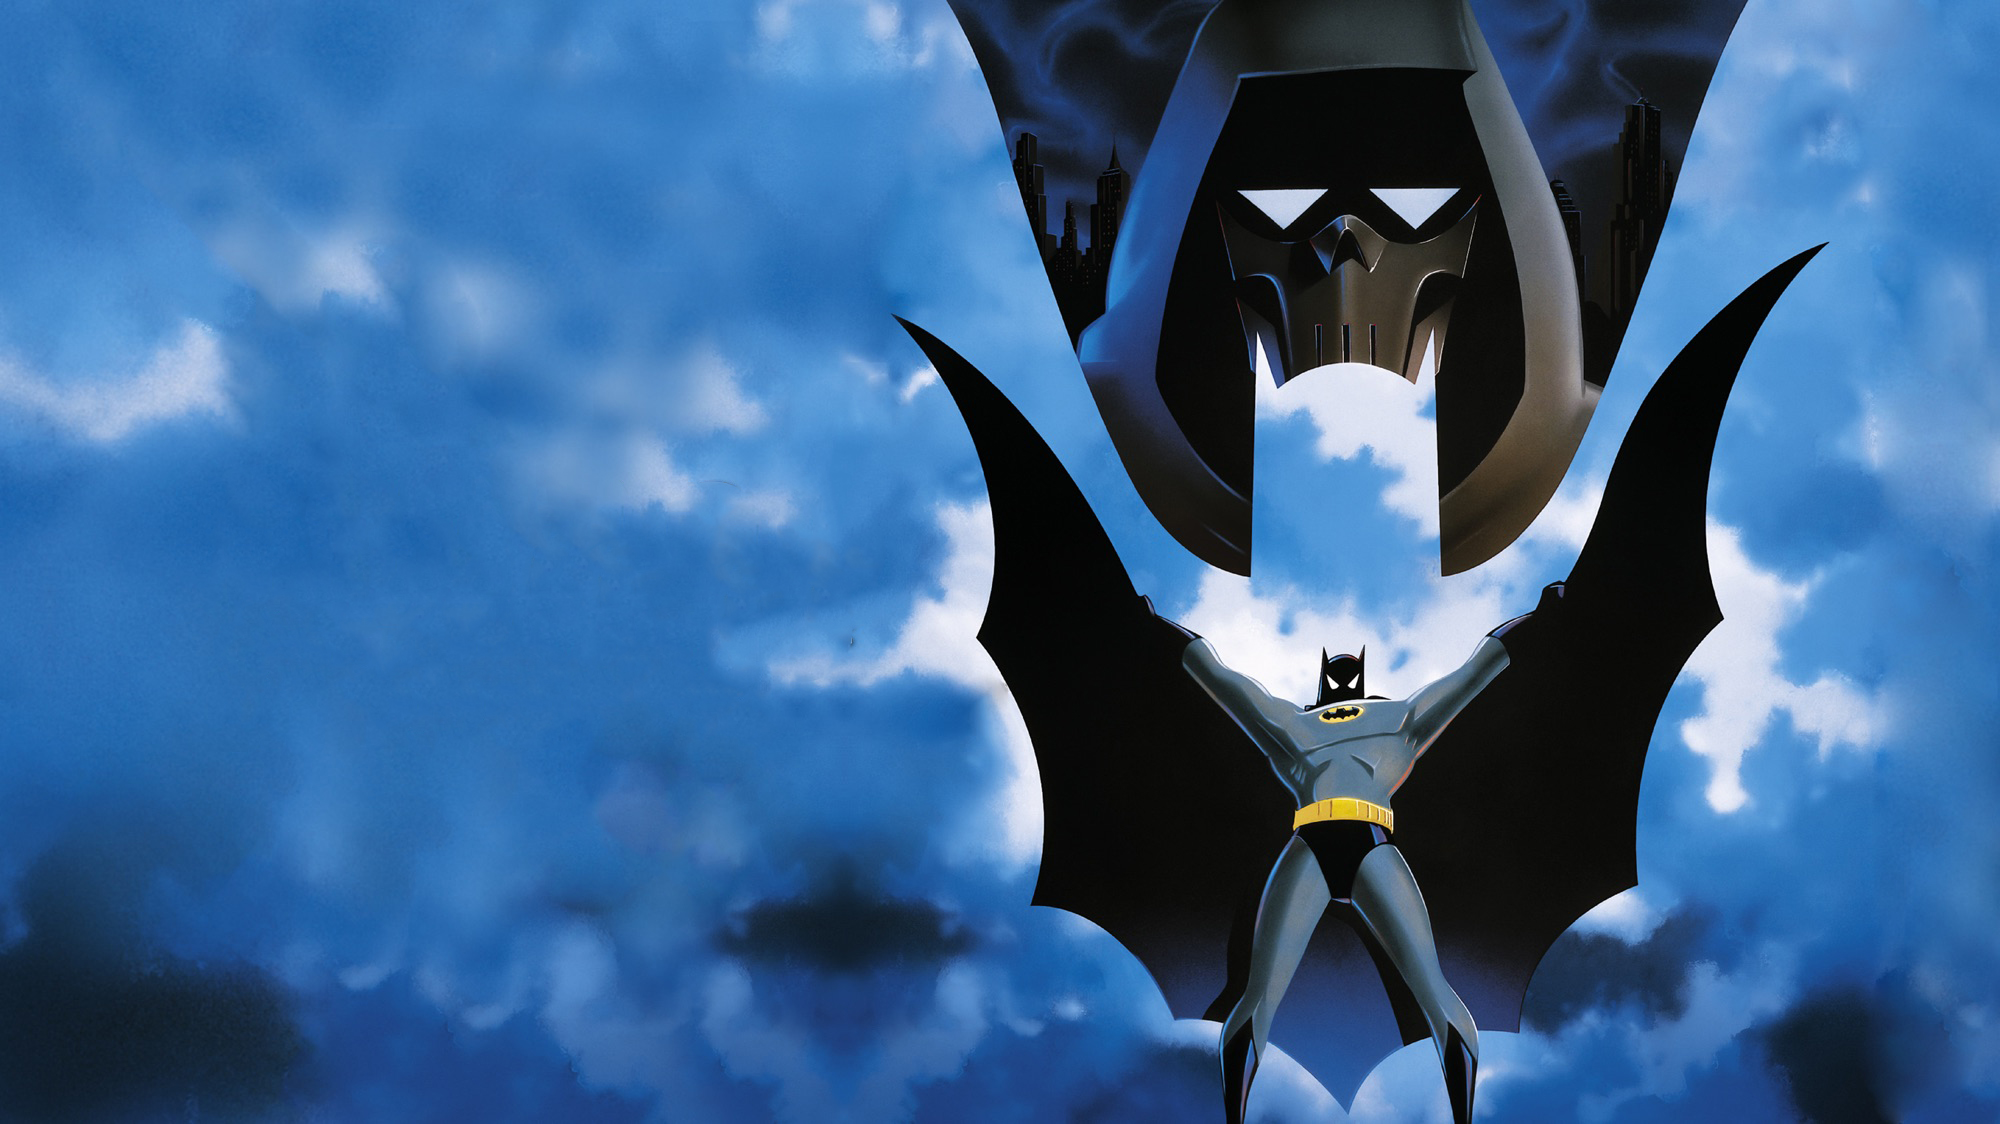 Скачать обои Бэтмен: Маска Фантазма на телефон бесплатно